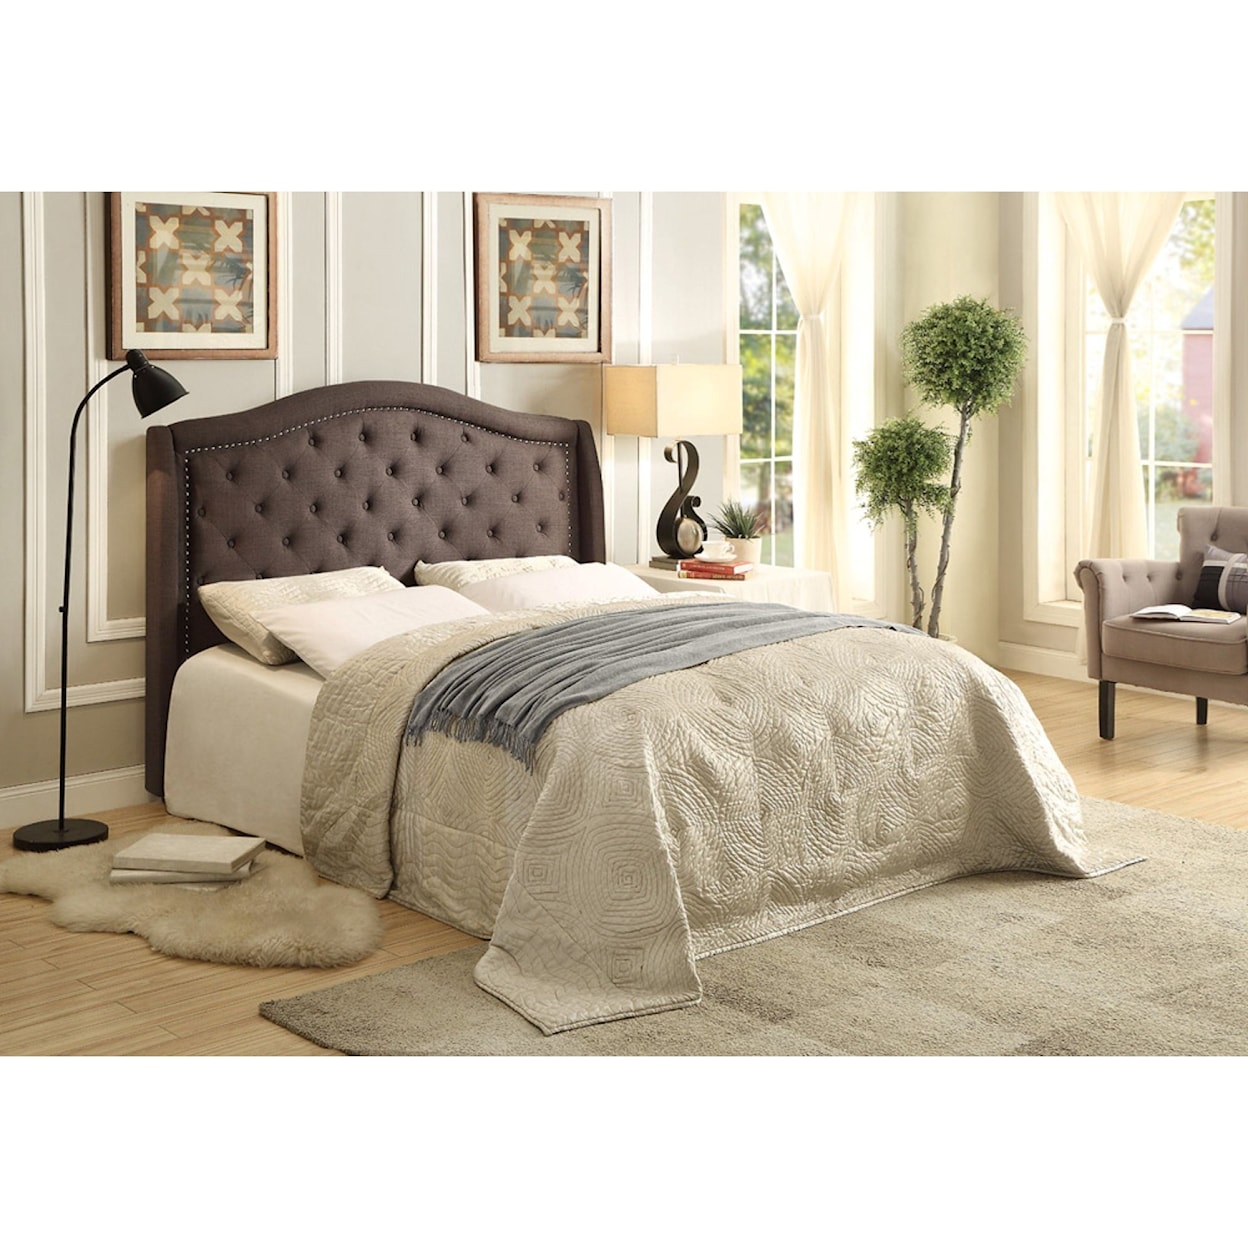 Homelegance Bryndle King Upholstered Bed